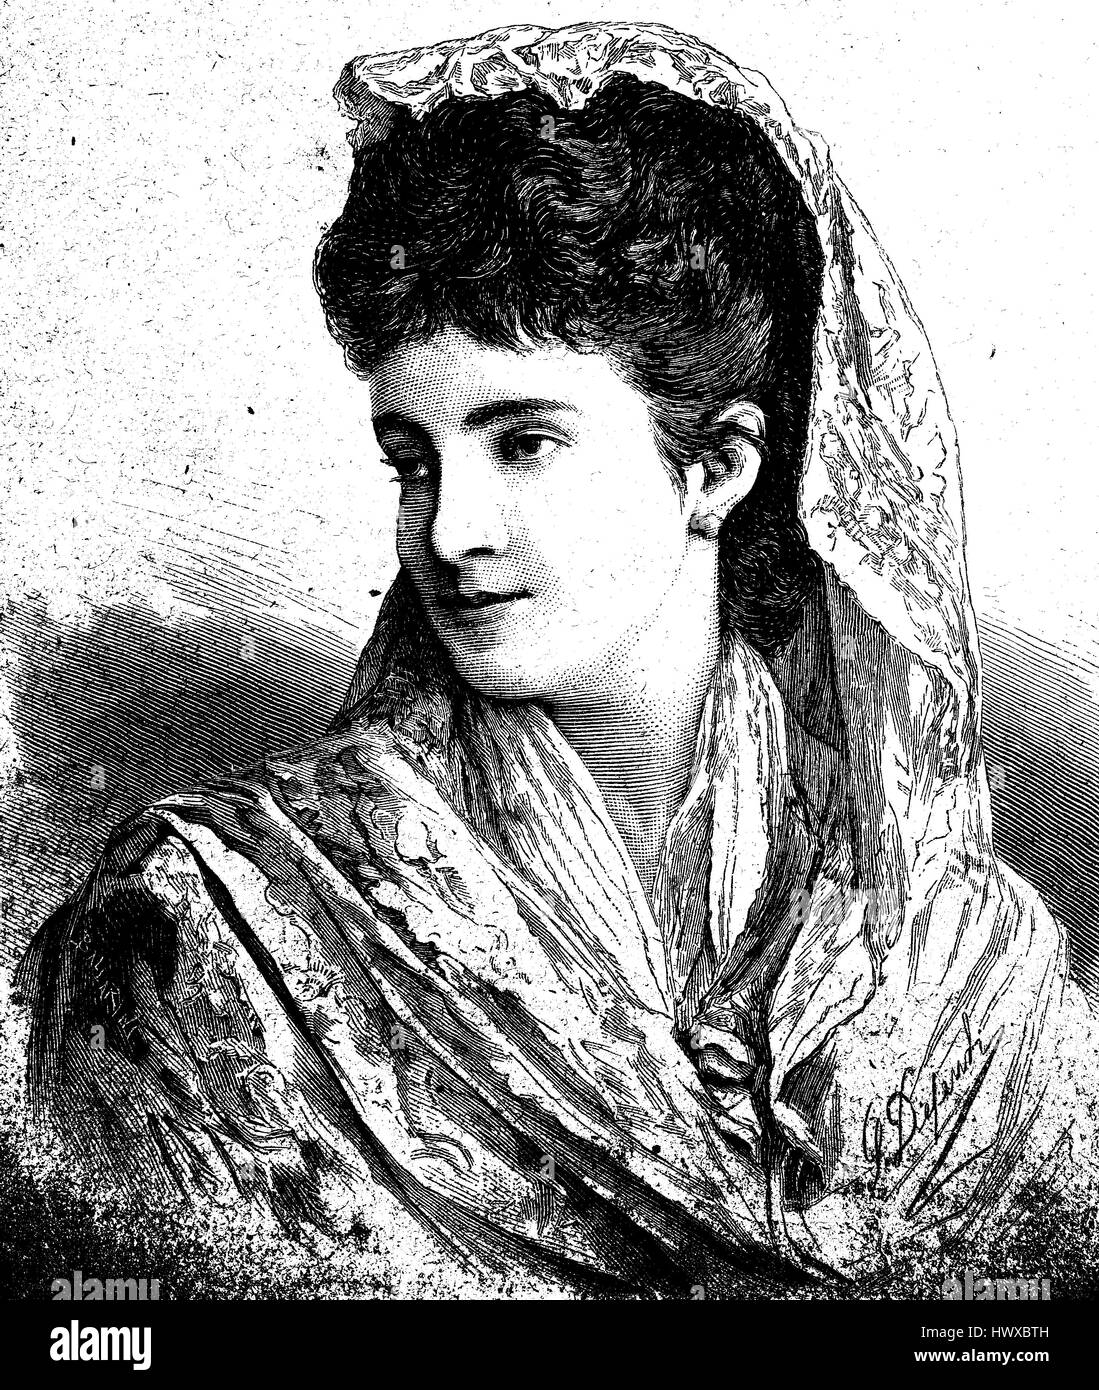 Adelina Patti, geboren Adela Juana Maria Patti, 18. Februar 1843 in Madrid - September 27, 1919, Craig-y-Nos, Wales, war eine spanische Opernsängerin, italienischer Abstammung, Italien, Reproduktion eines Bildes, Holzschnitt aus dem Jahr 1881, digital verbessert Stockfoto